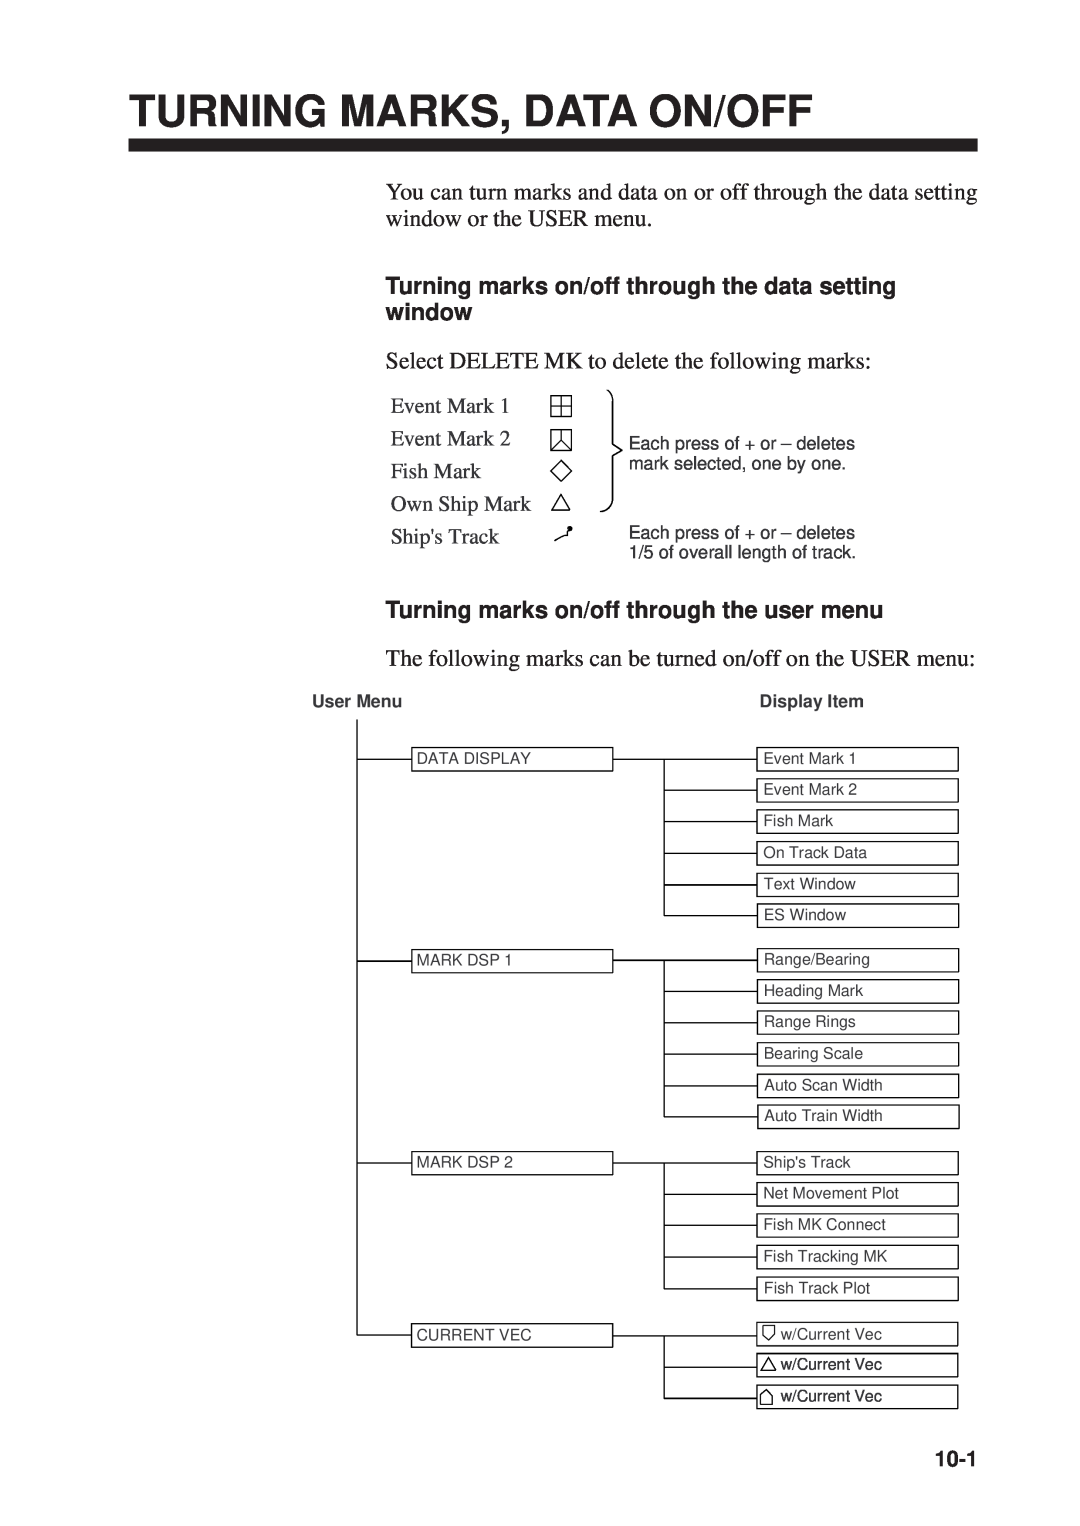 Furuno CSH-53 manual Turning Marks, Data On/Off, Turning marks on/off through the data setting window, 10-1 